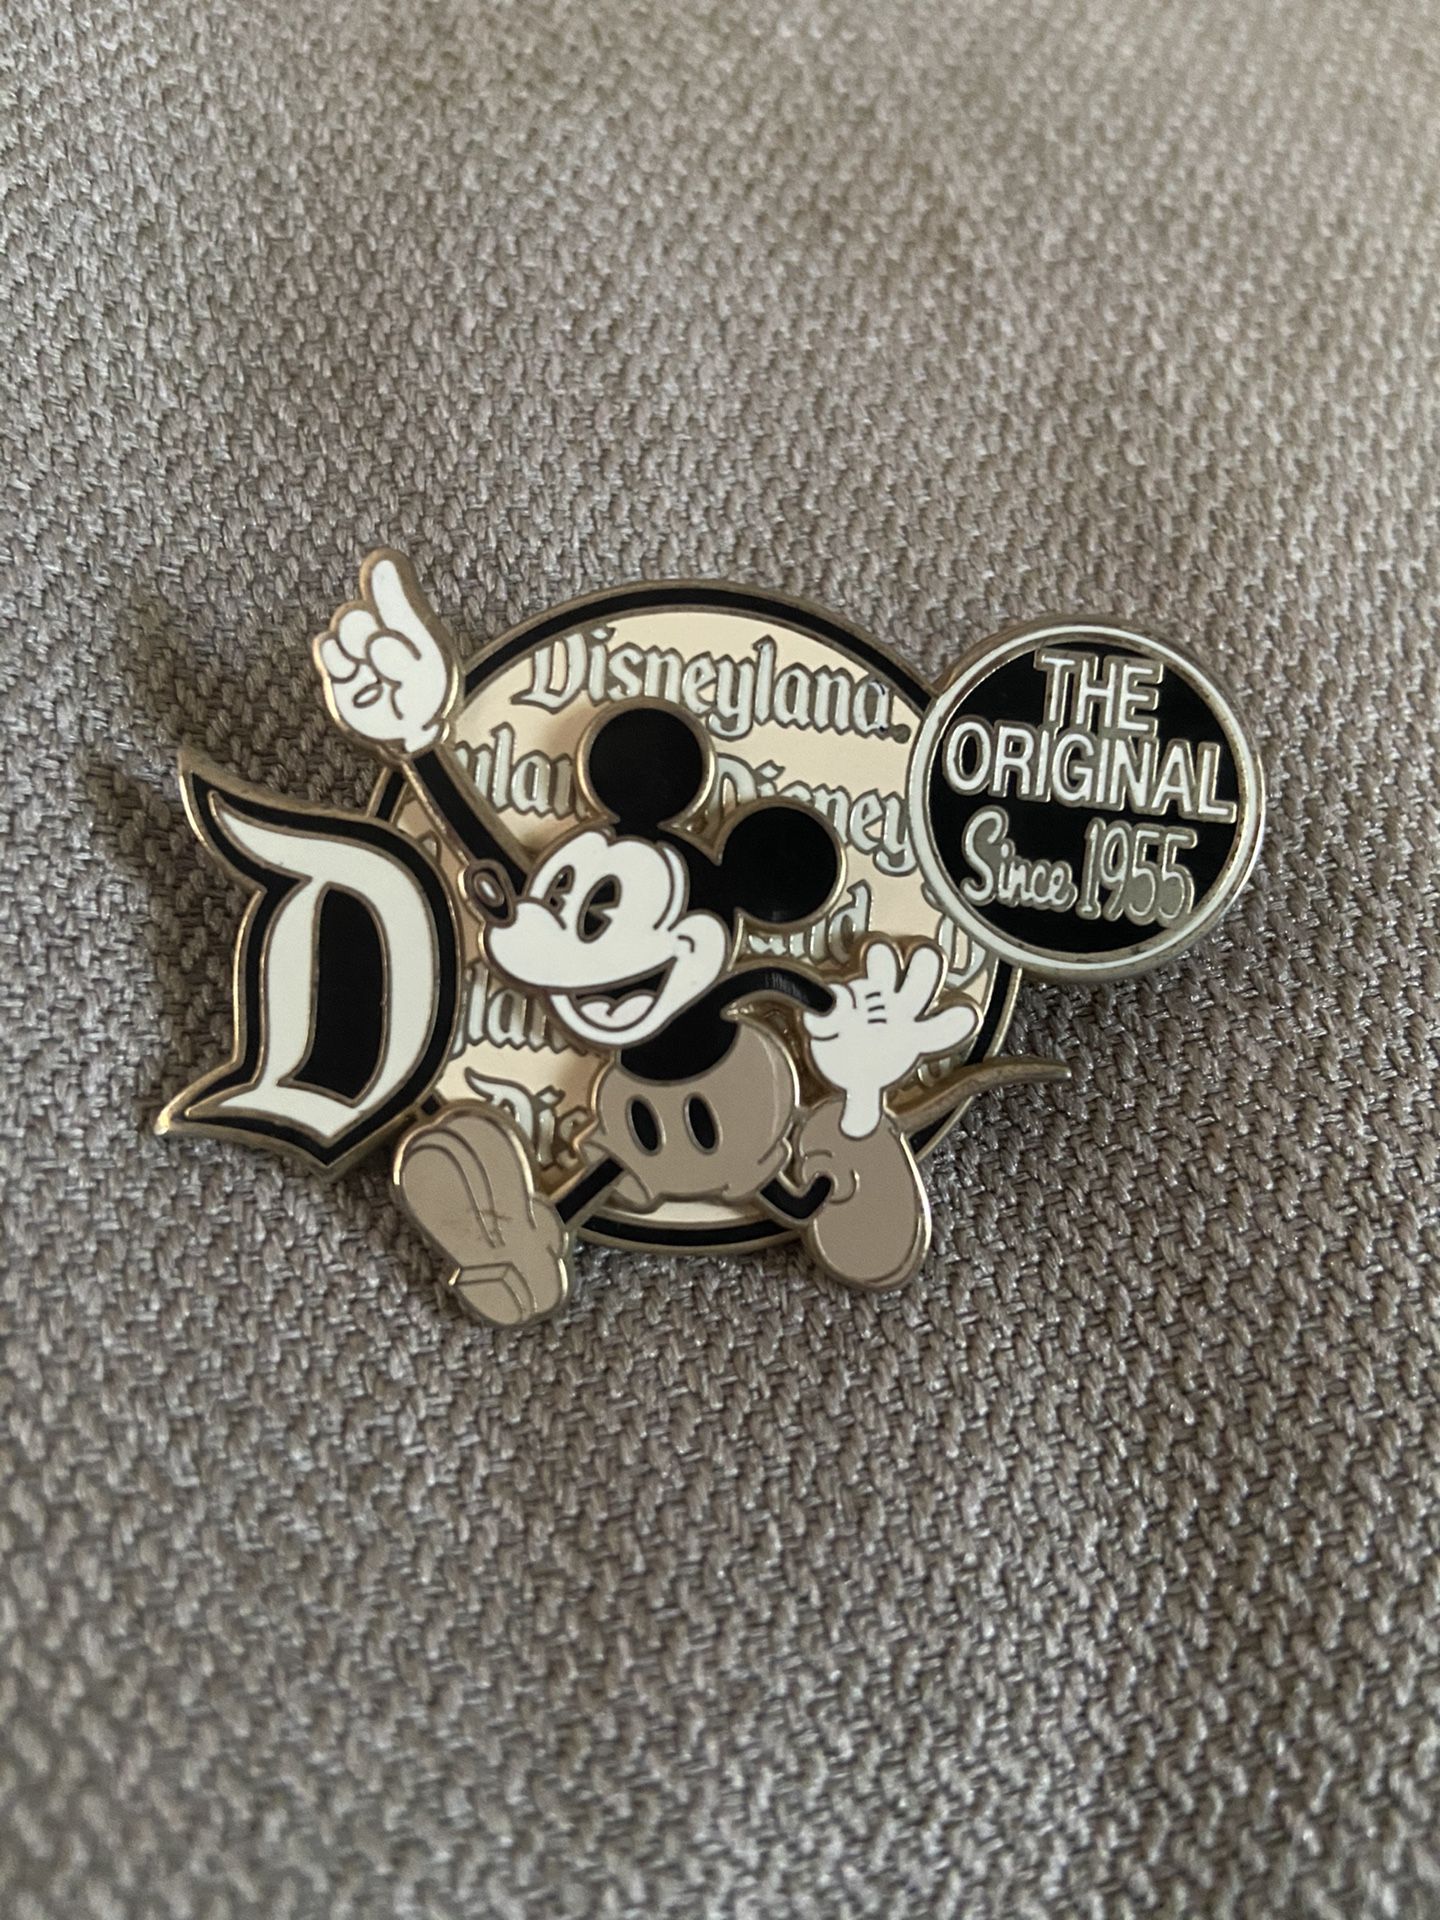 Disneyland Pin 2008